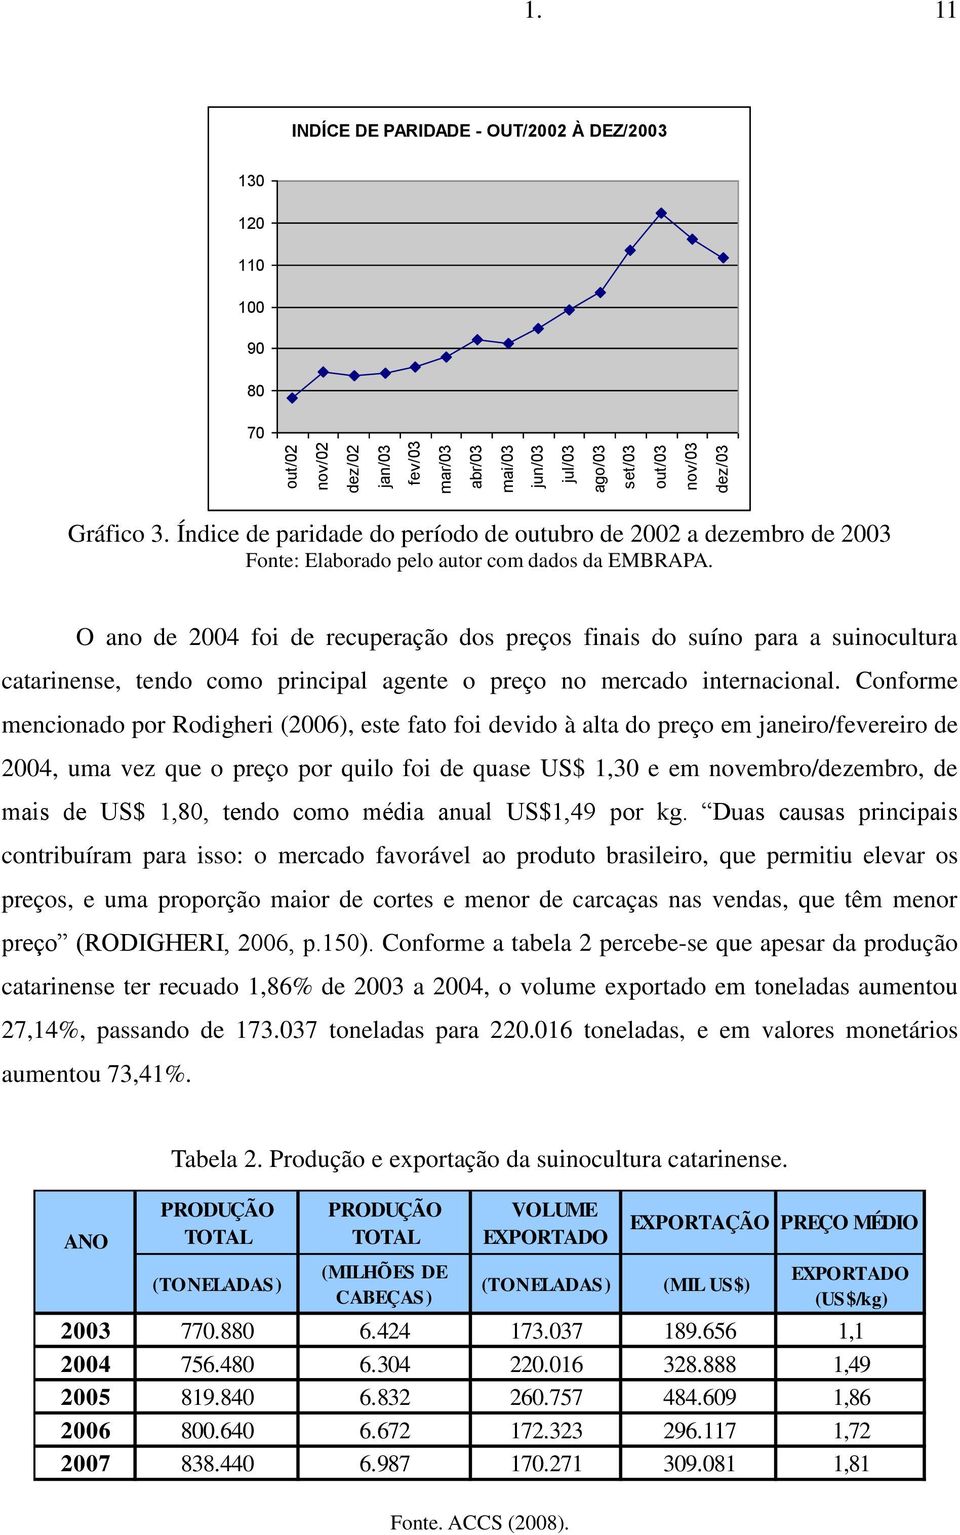 O ano de 2004 foi de recuperação dos preços finais do suíno para a suinocultura catarinense, tendo como principal agente o preço no mercado internacional.